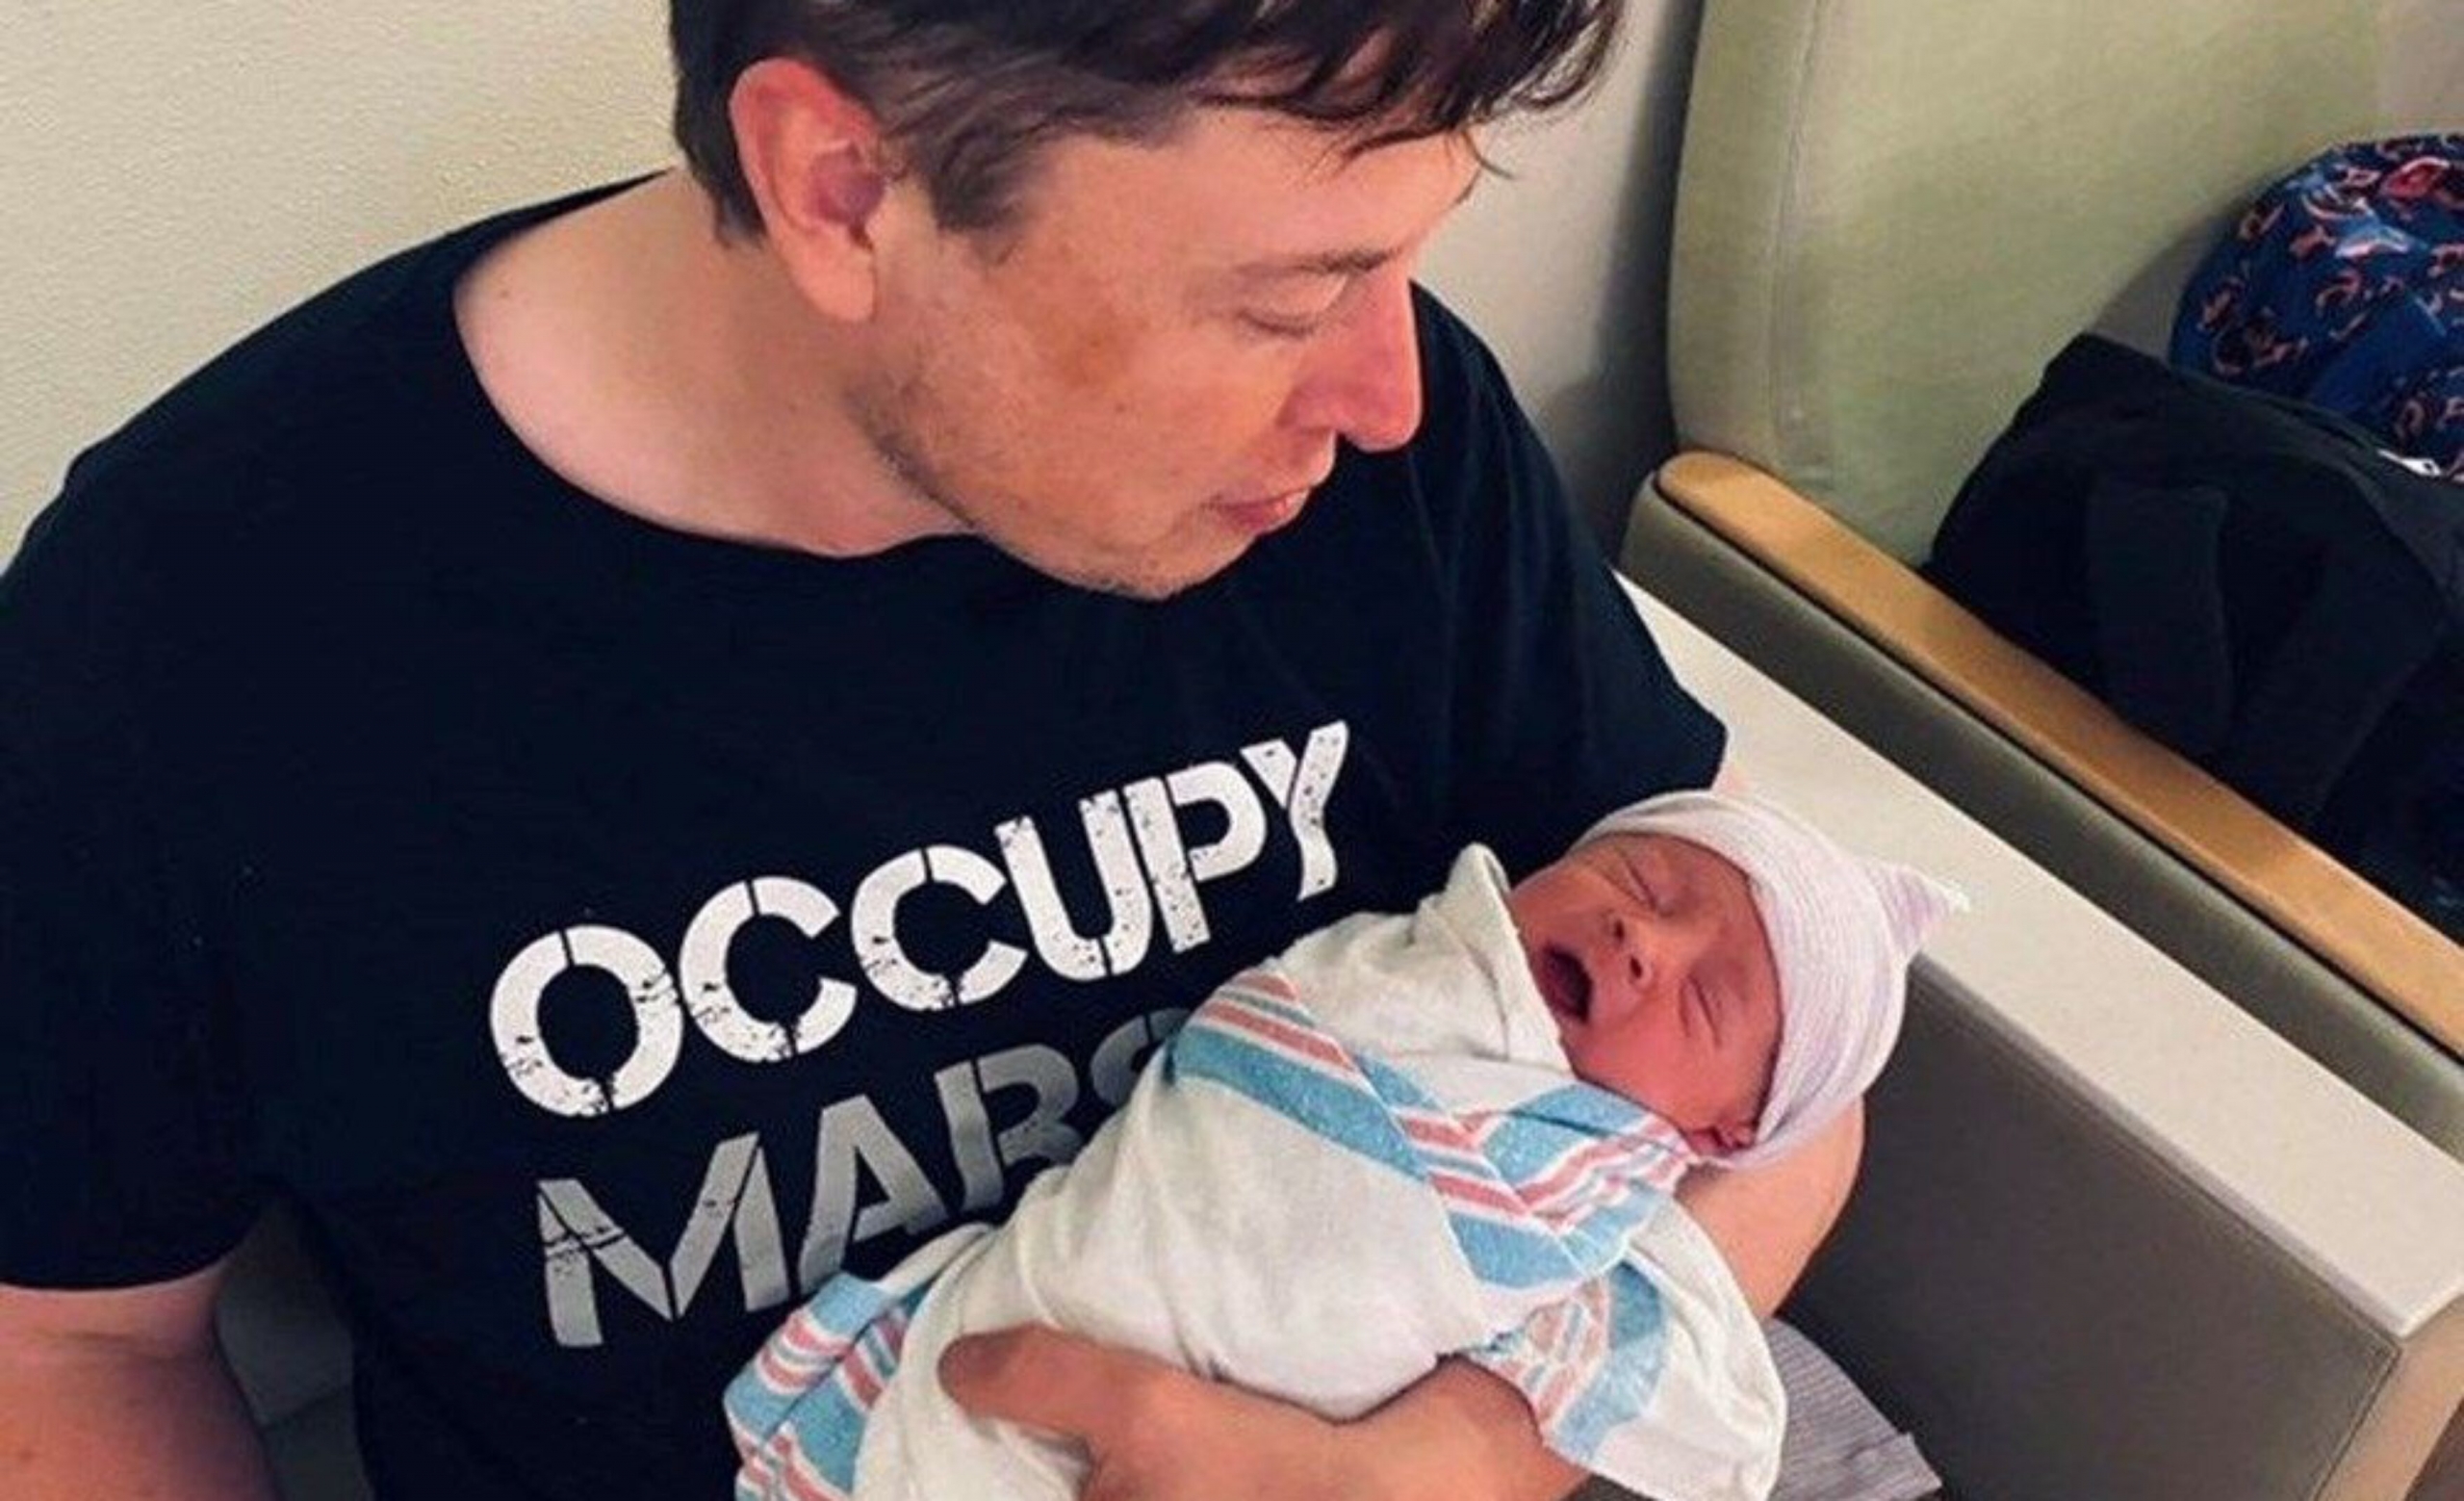 Certificado de nacimiento confirma nombre del bebé de Grimes y Elon Musk